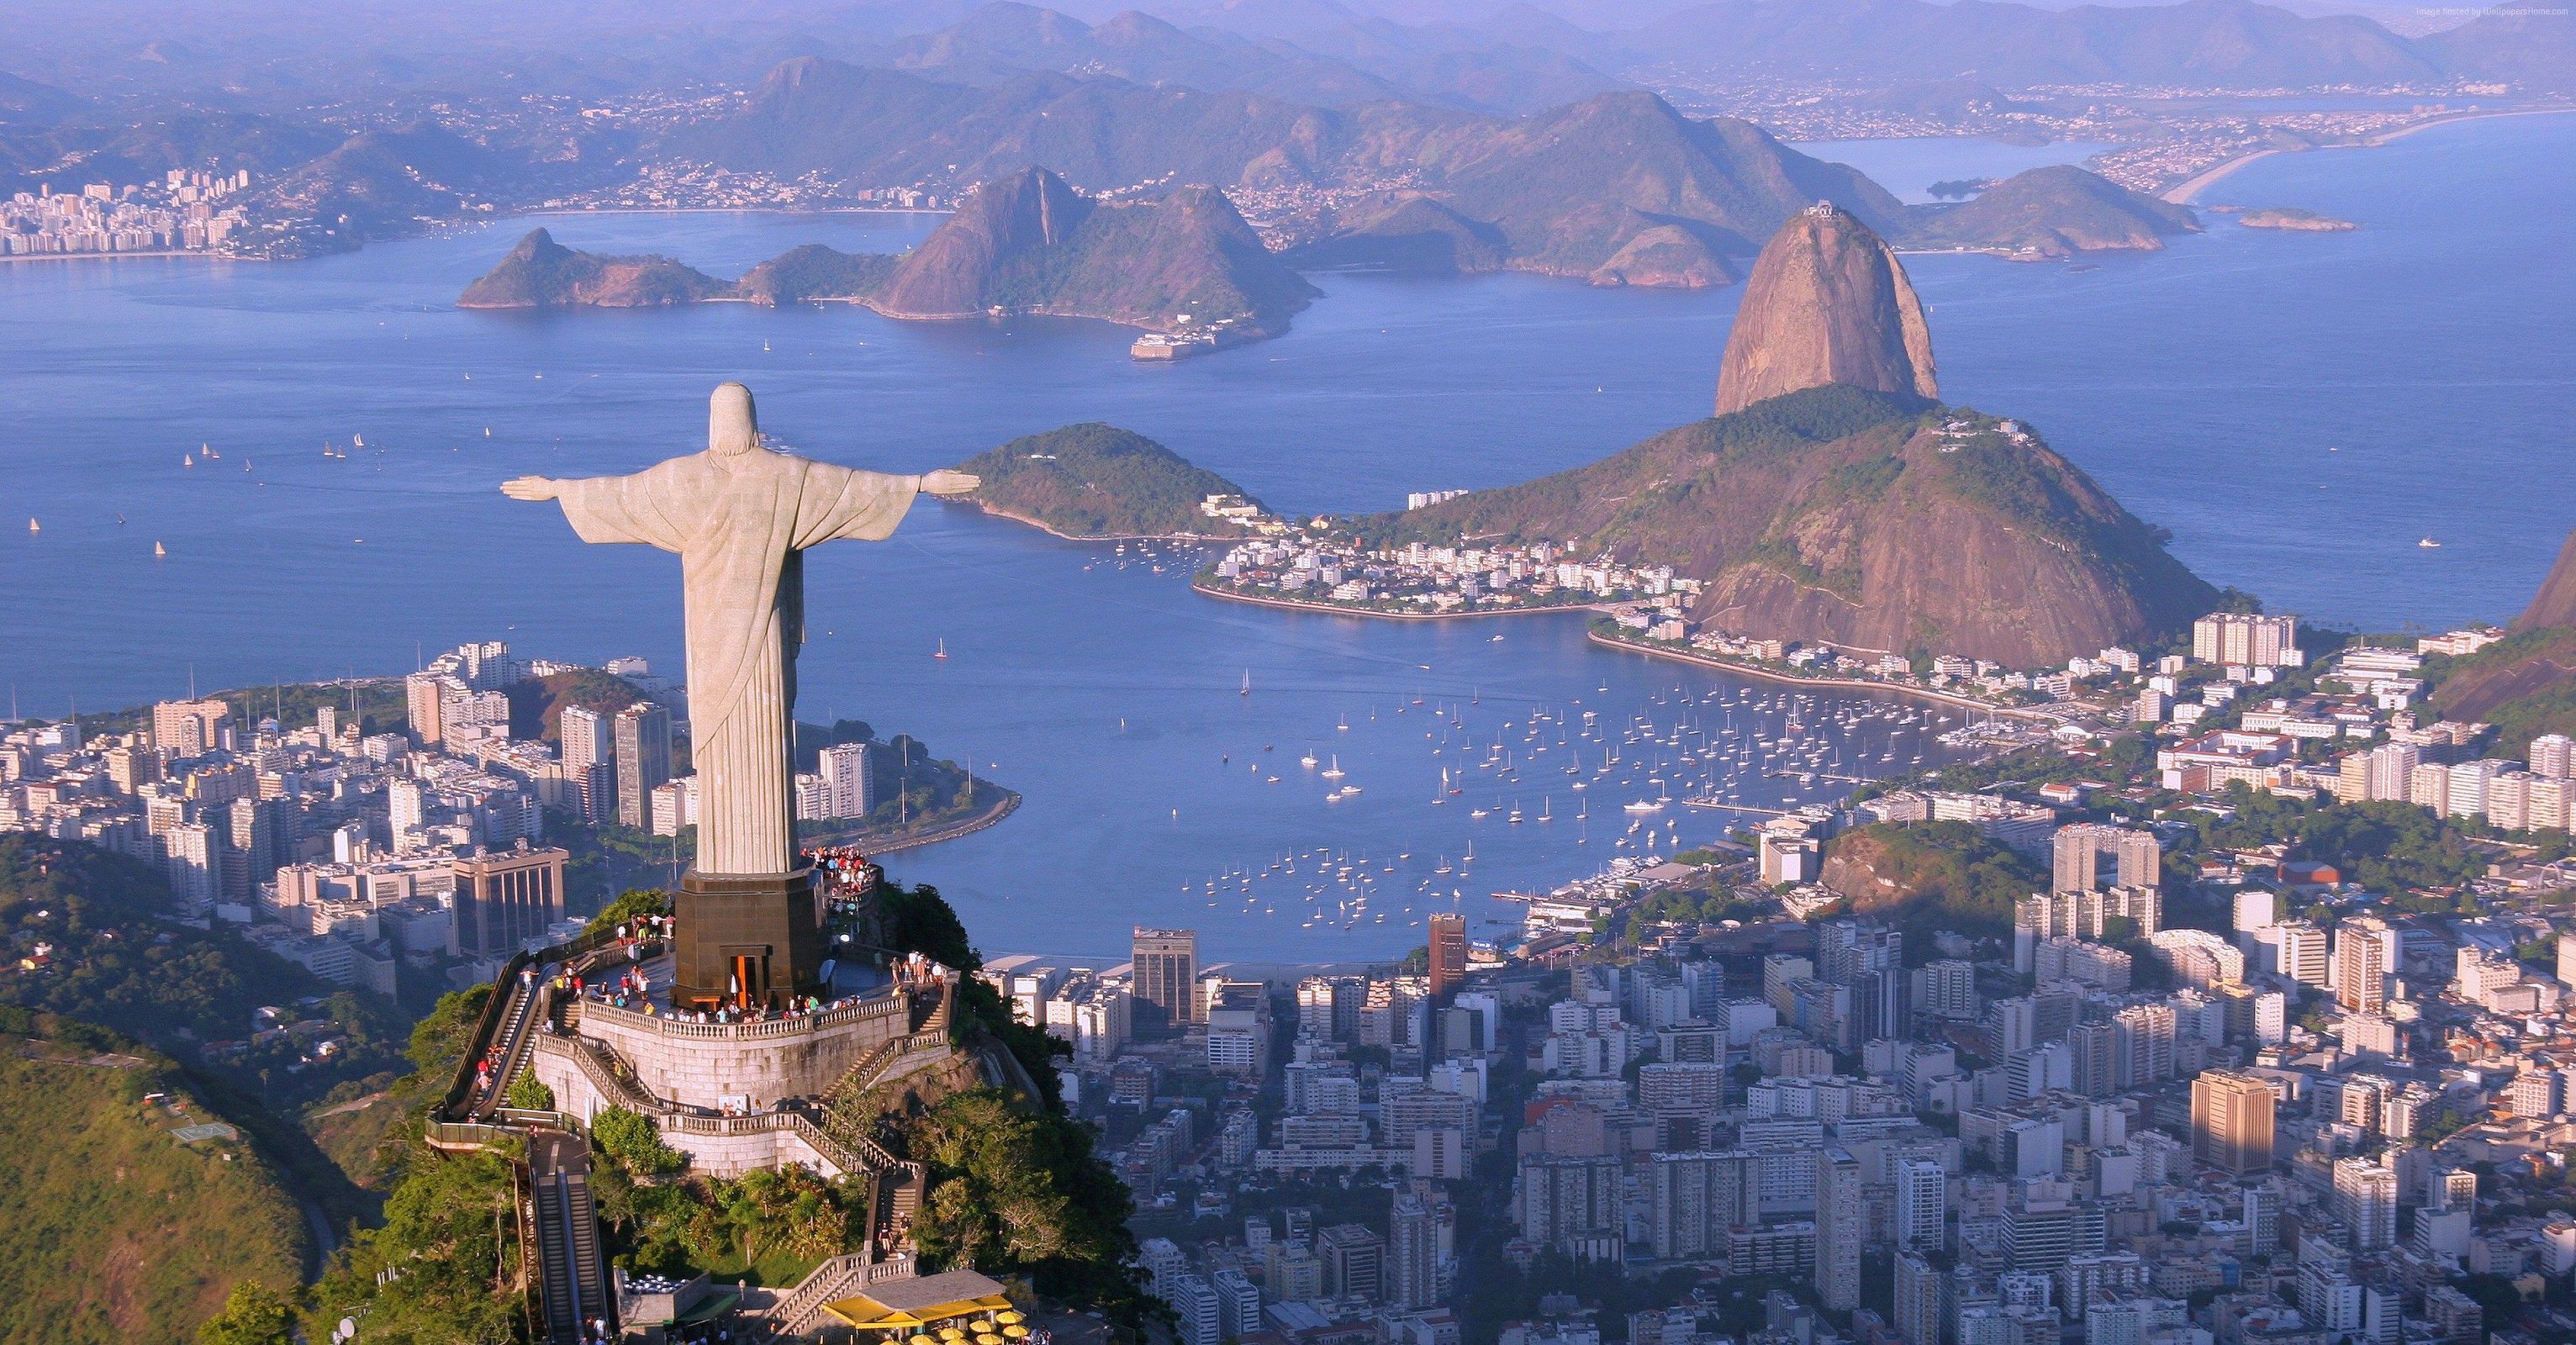 Christ, Redeemer, Rio, De, Janeiro, Brazil, Tourism, Travel